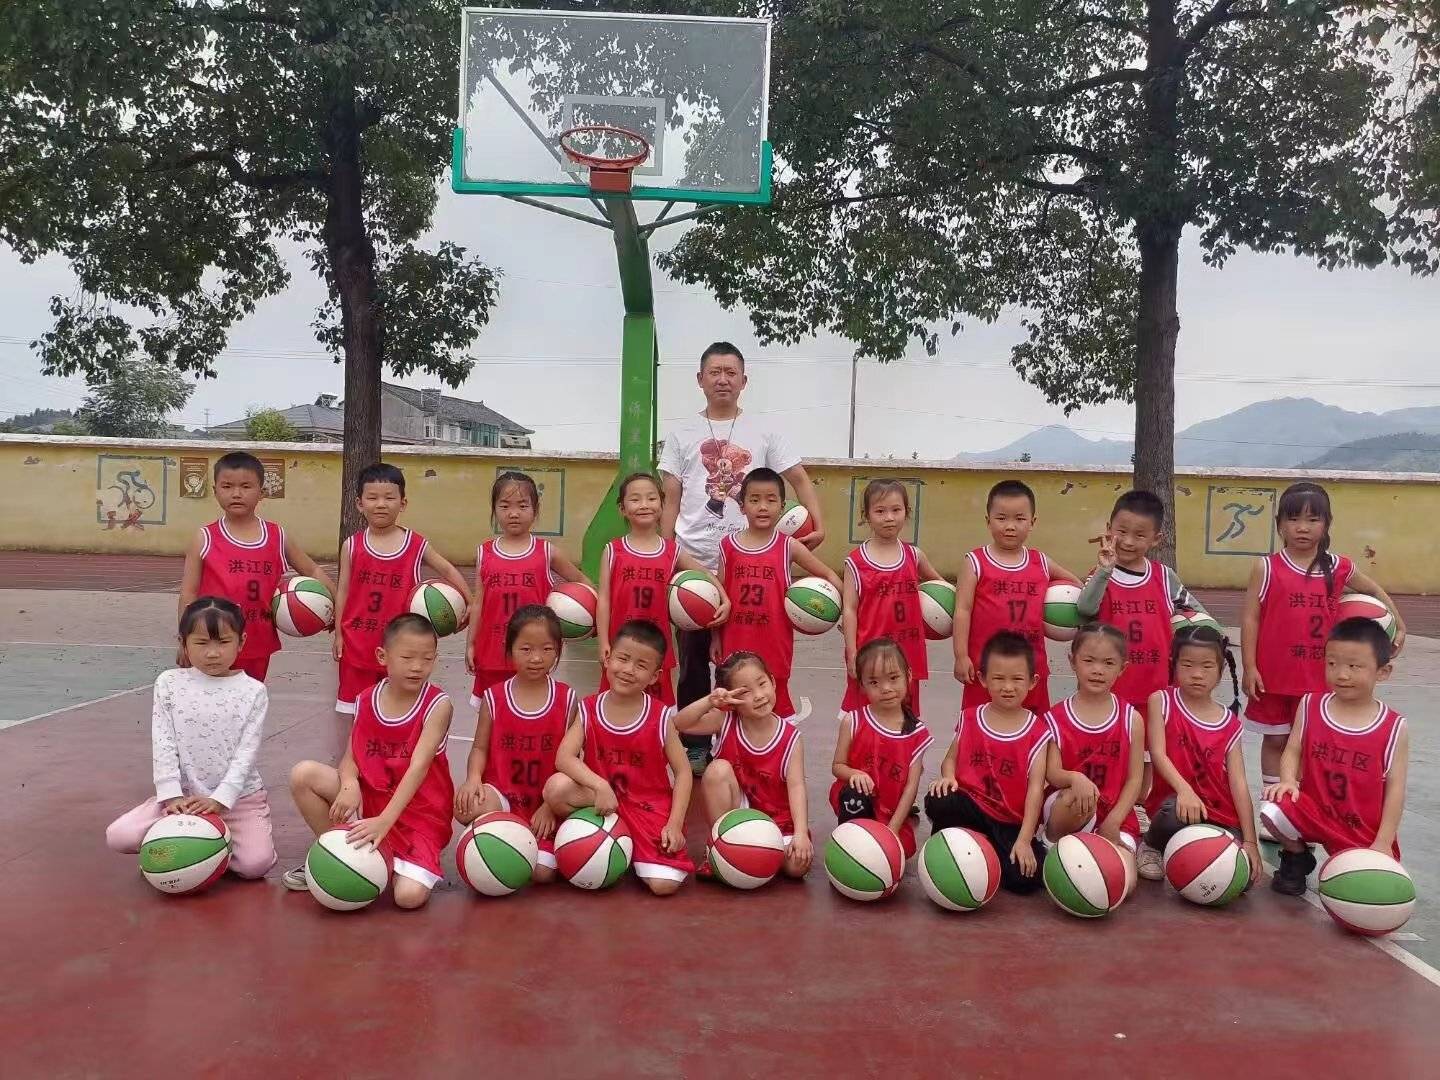 湖南快递员18年免费教上千名乡村儿童打篮球，为了他们放弃升职